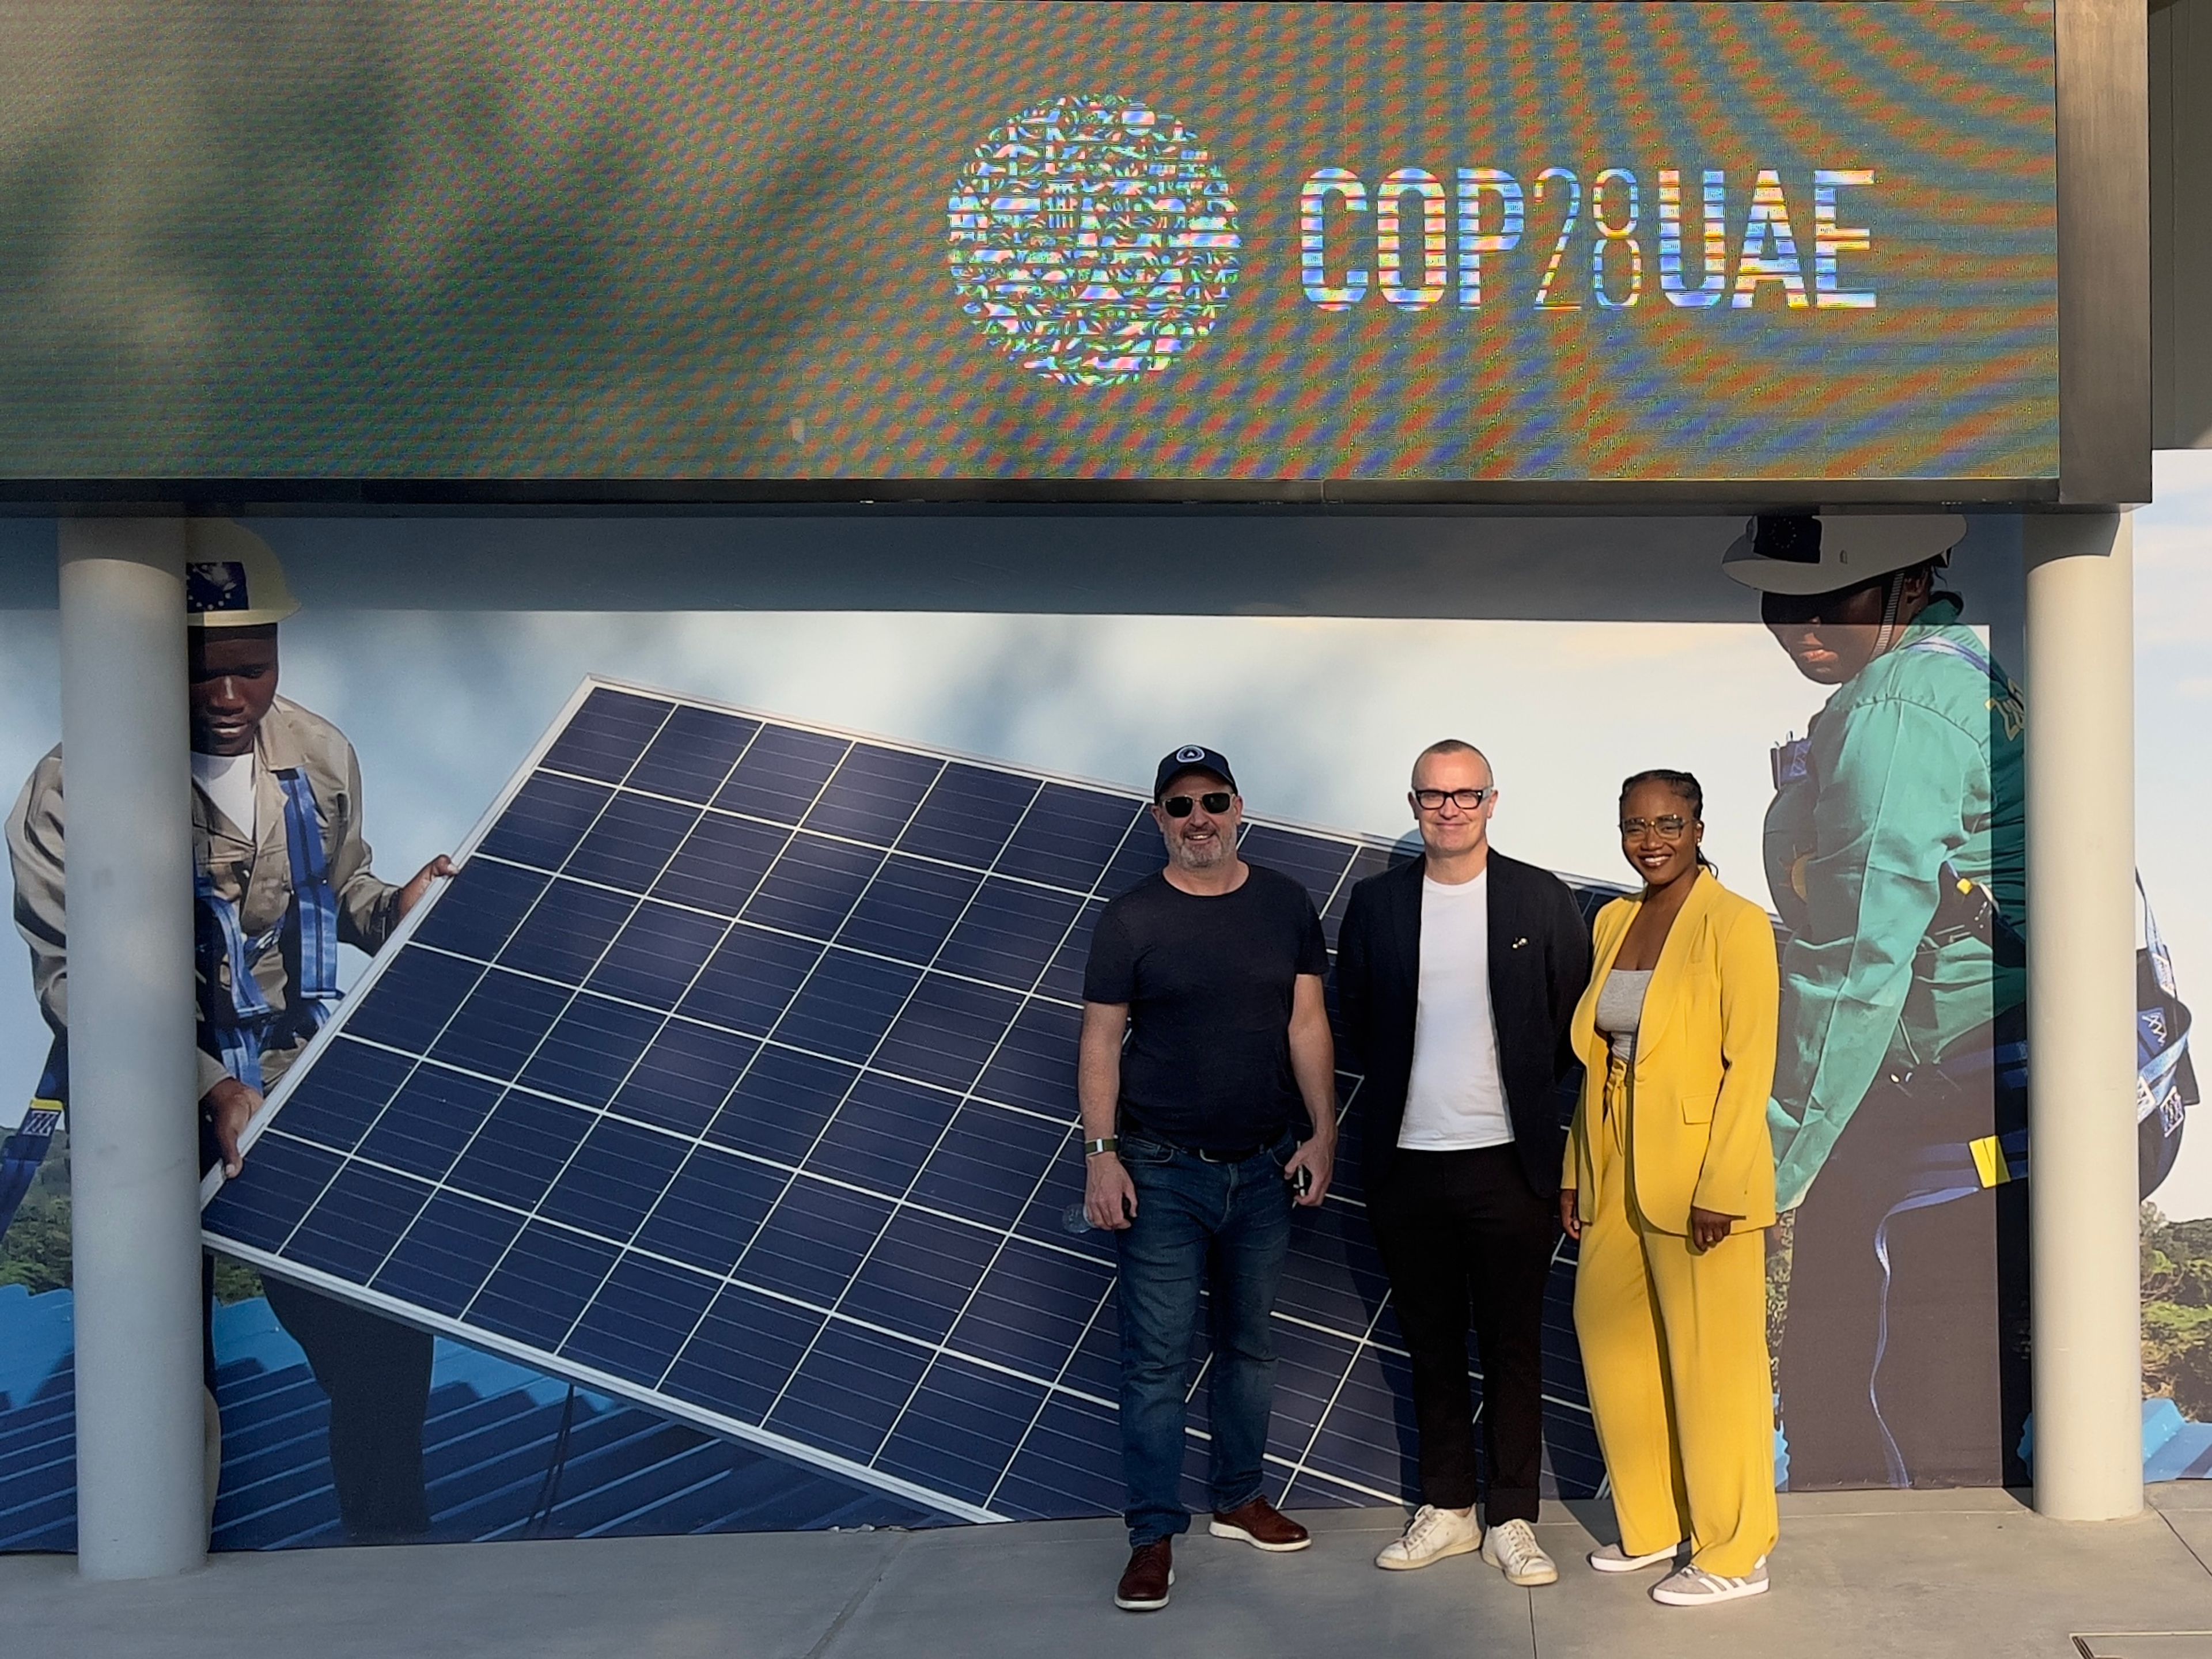 Mike, Ben and Onyeka at COP28 UAE, Dubai